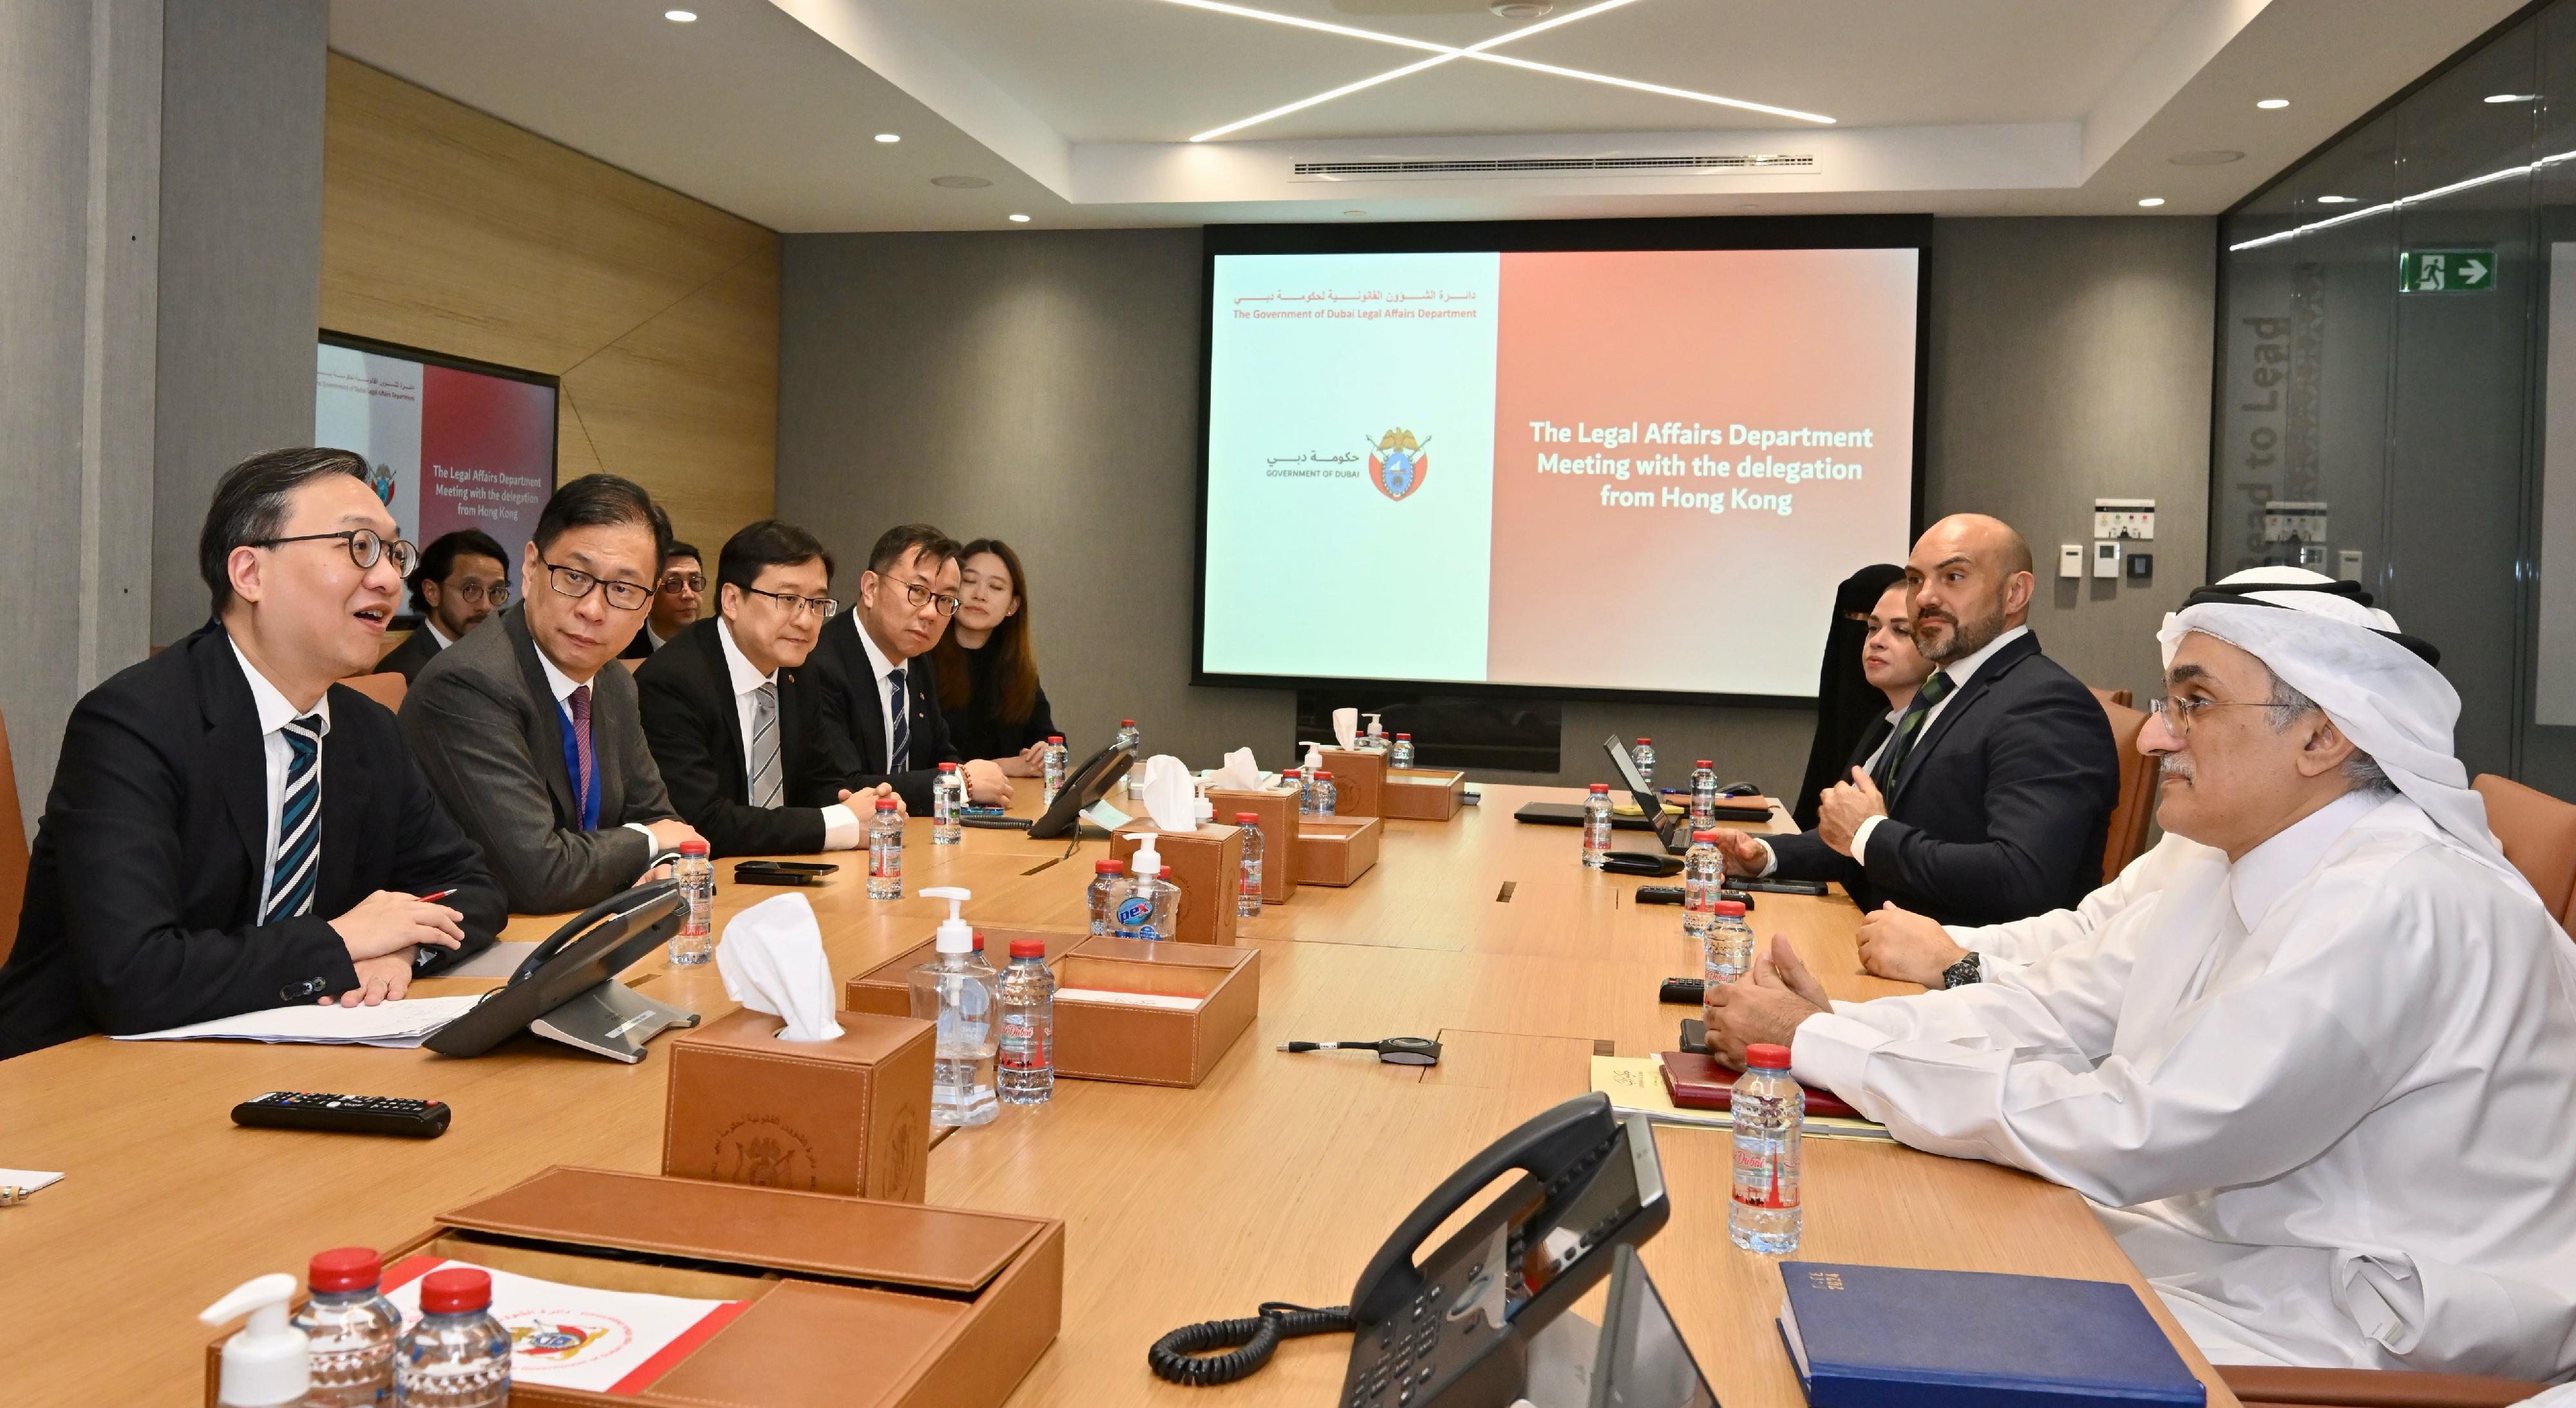 律政司司长林定国资深大律师今日（迪拜时间五月二十二日）继续在阿拉伯联合酋长国迪拜的访问。图示林定国（左一）和代表团与迪拜政府法律事务部部长Lowai Mohamed Khalfan Belhoul博士（右一）及其他高层人员举行会议。